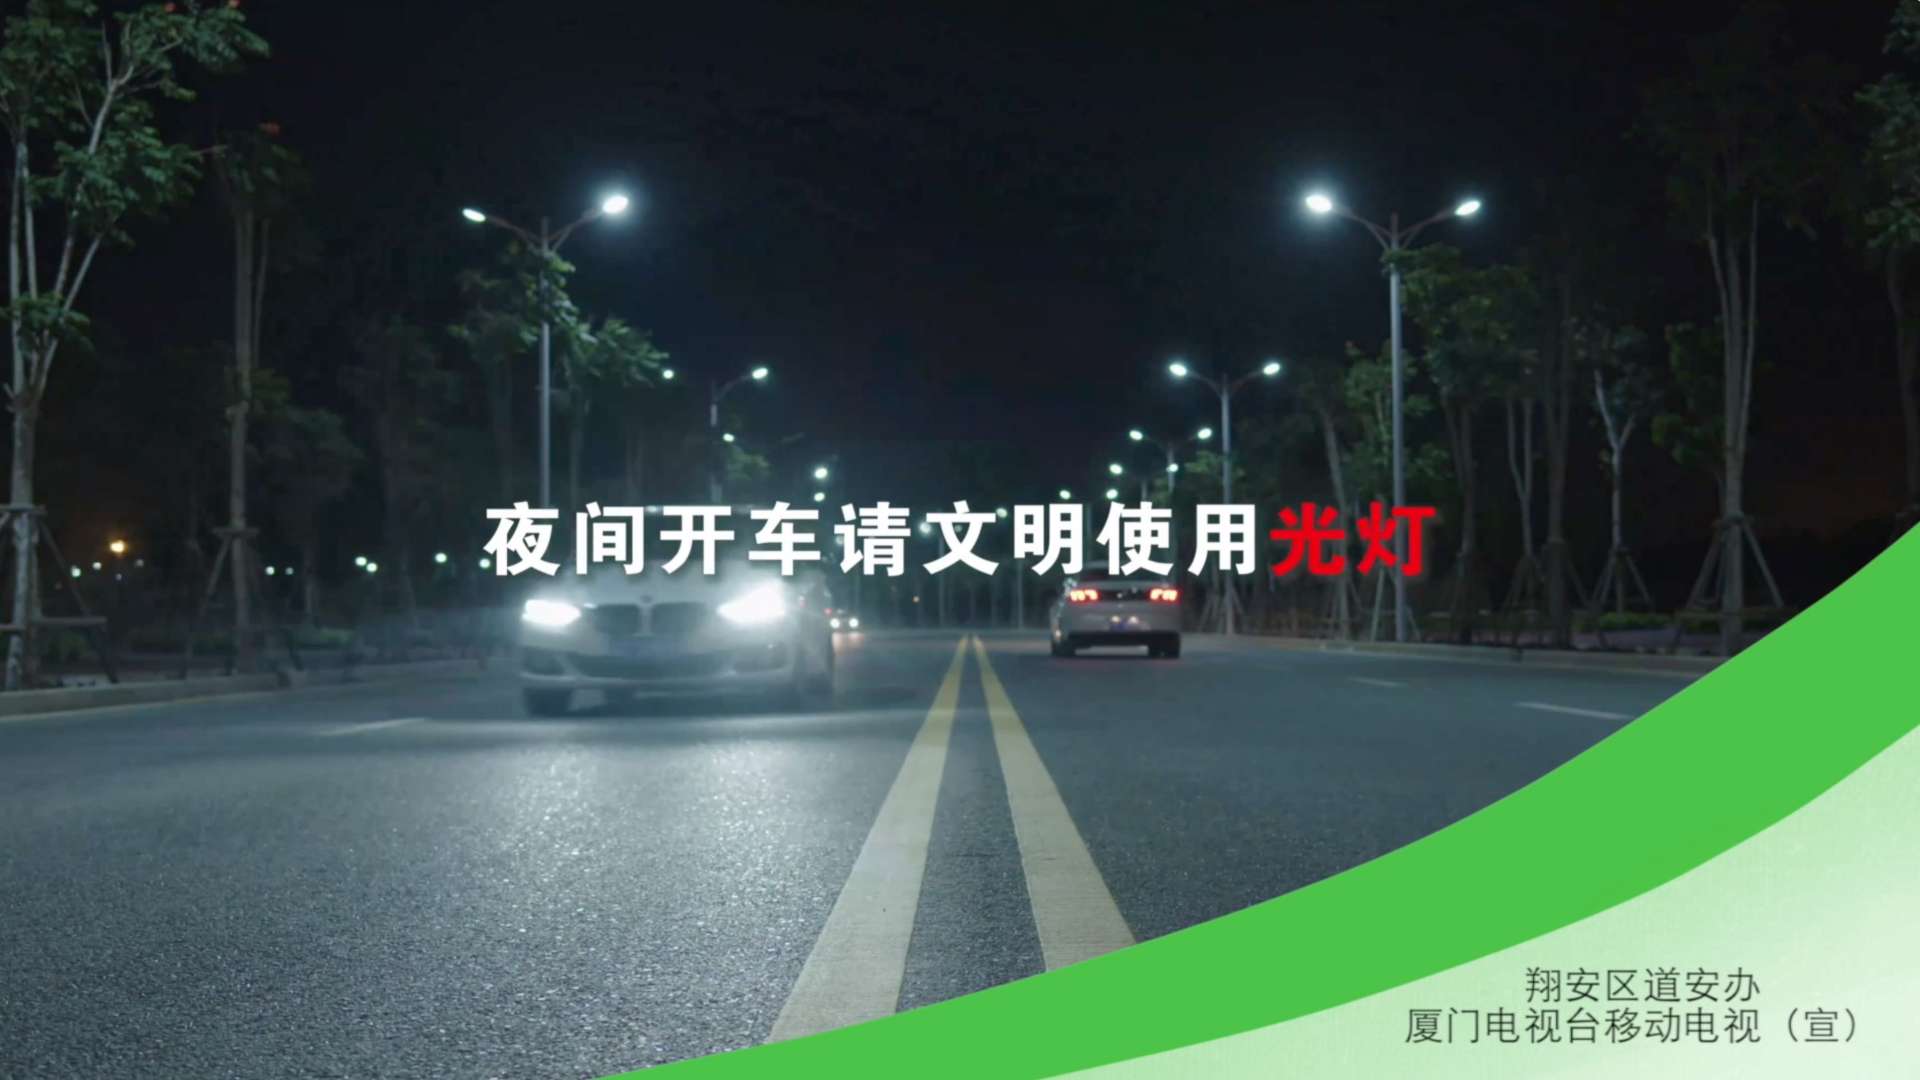 道路交通安全公益广告